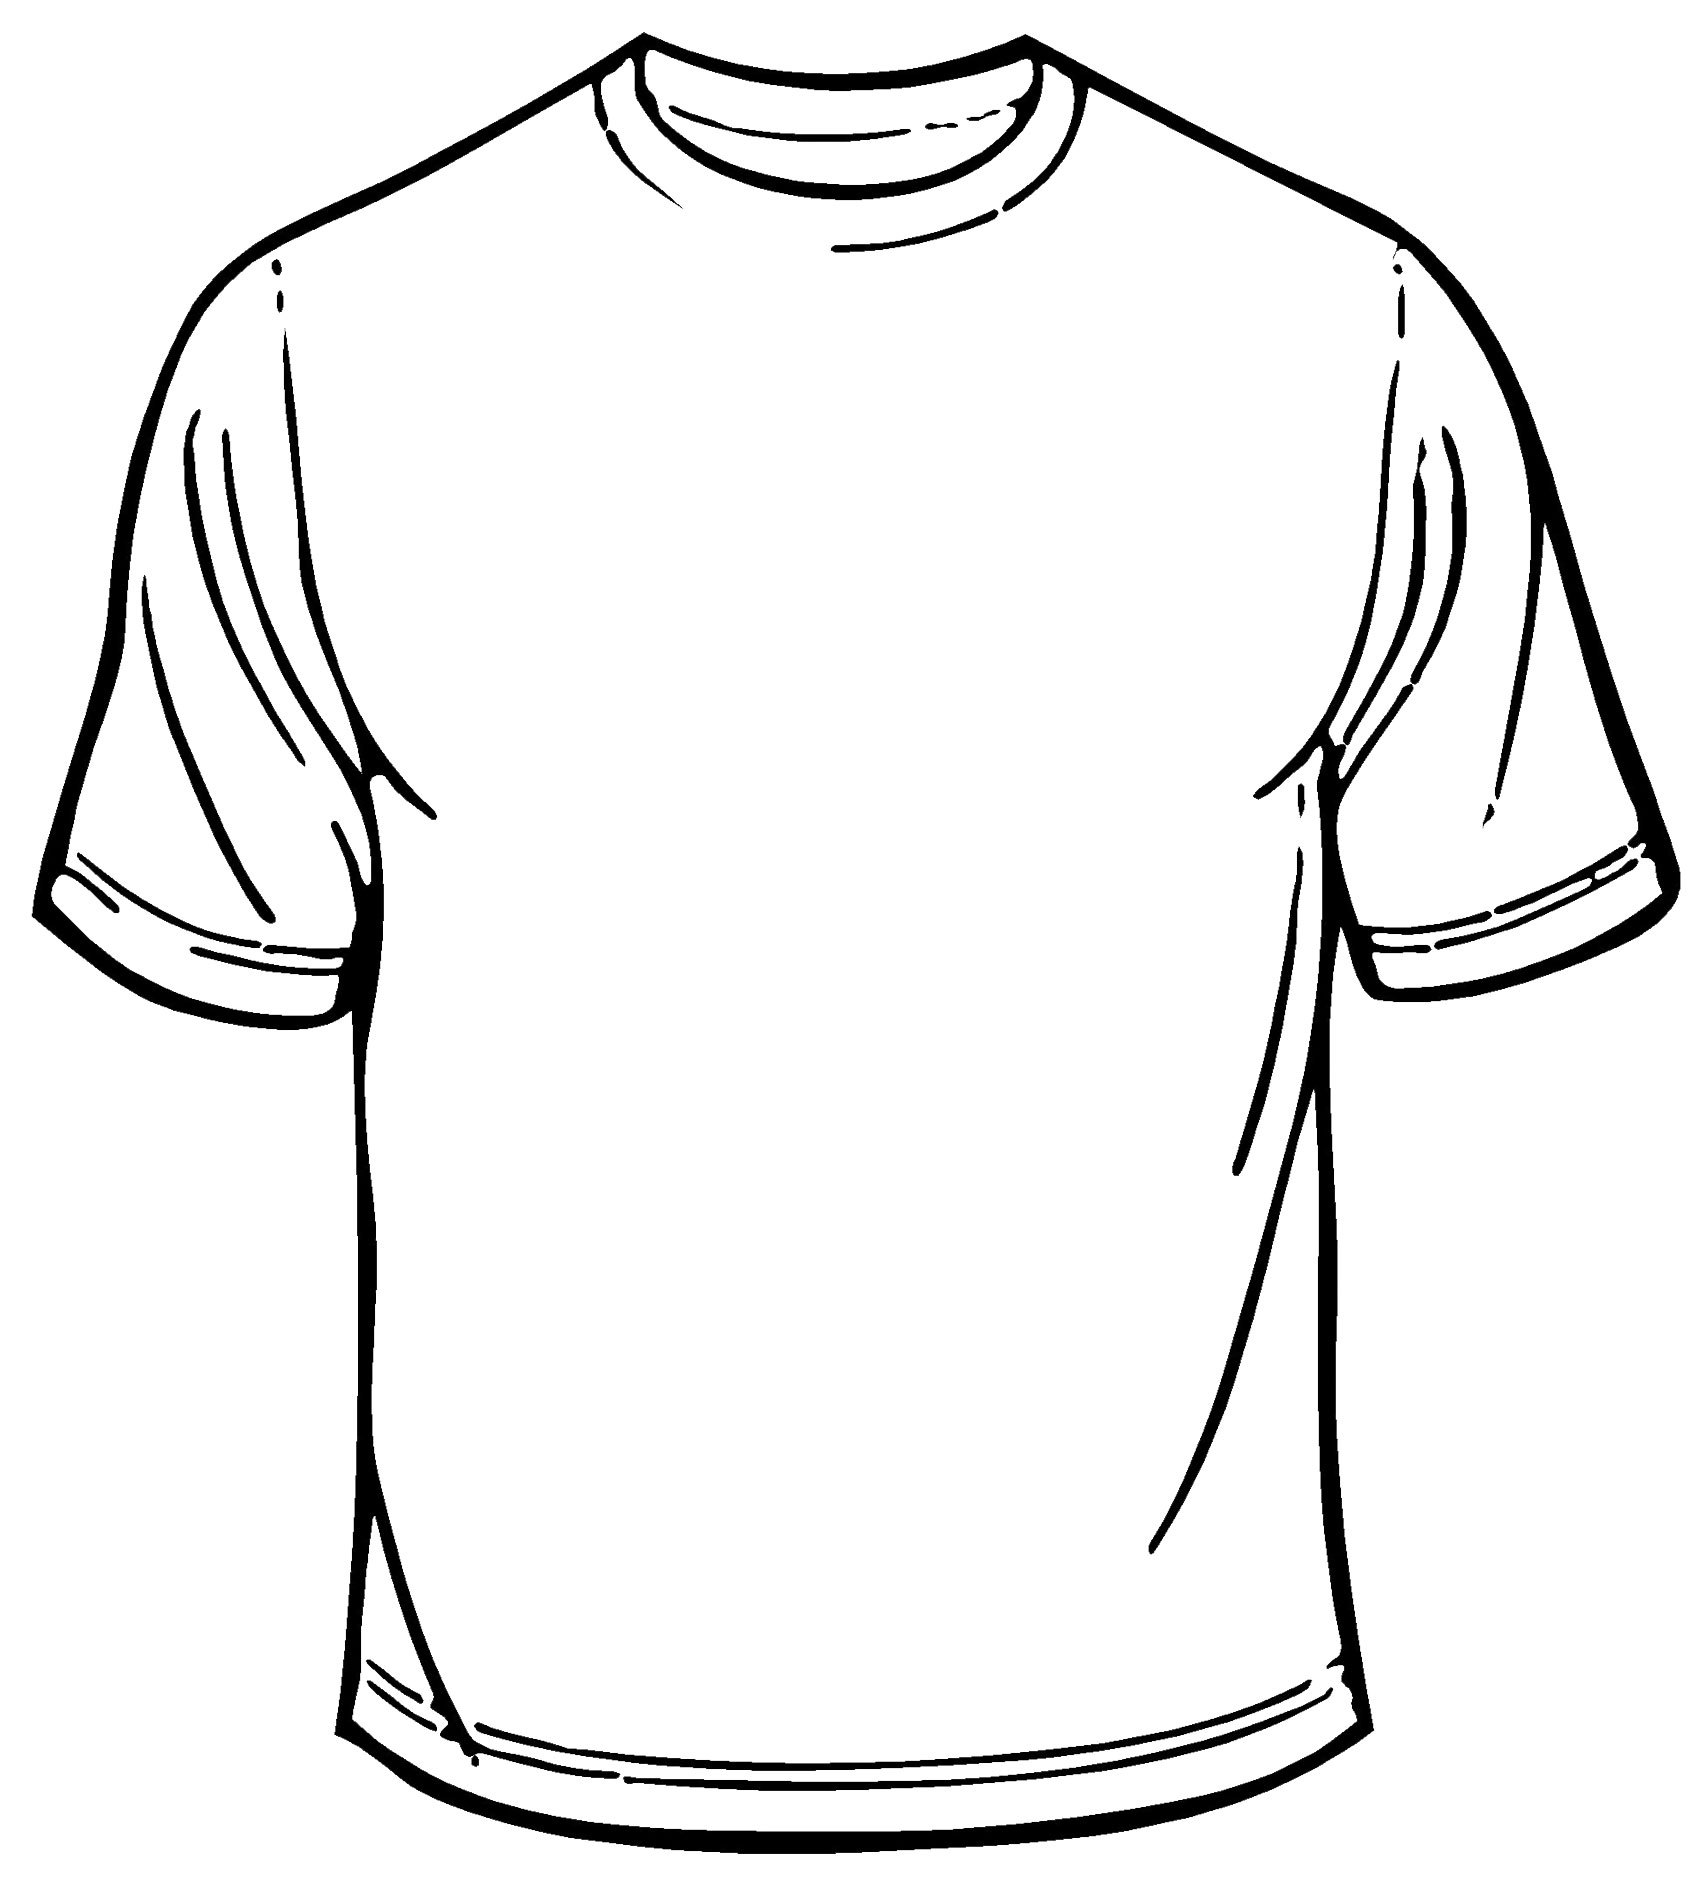 Design T Shirt Template. blank tee shirt template joy studio ...